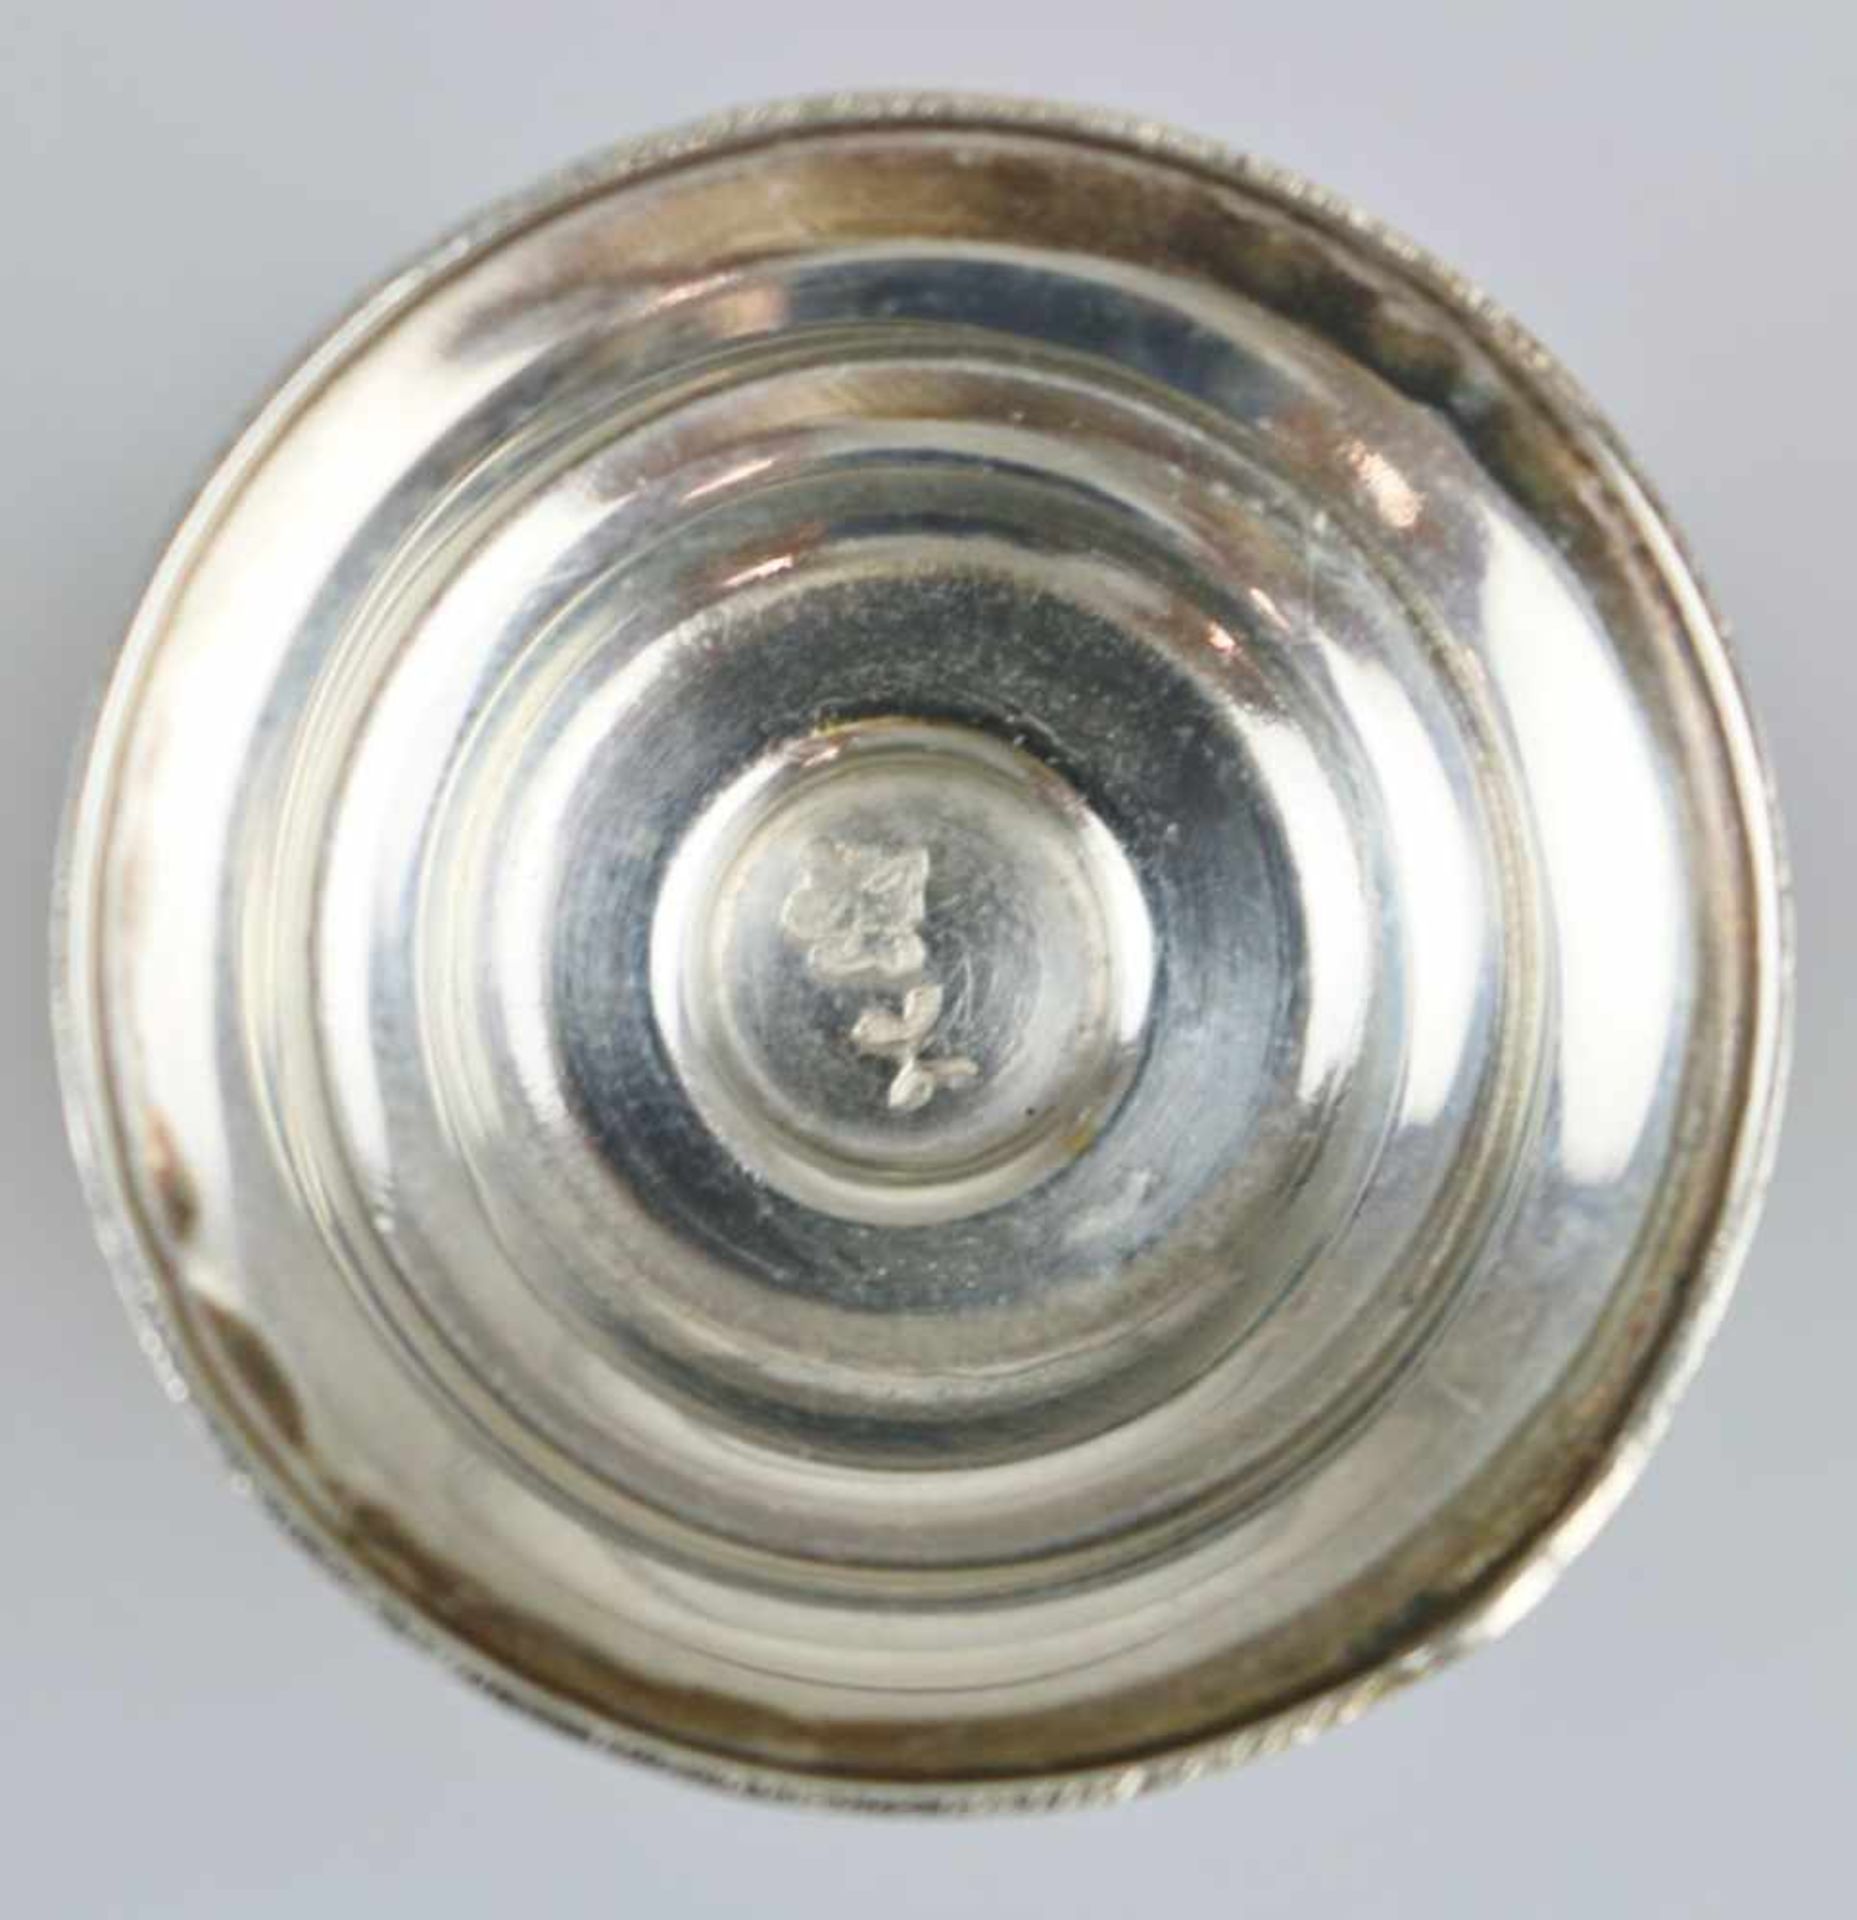 Paar Wodkabecher, Russland, Punze Stern mit Hammer und Sichel 875, kegelförmiger Kelch auf Schaft - Bild 2 aus 2